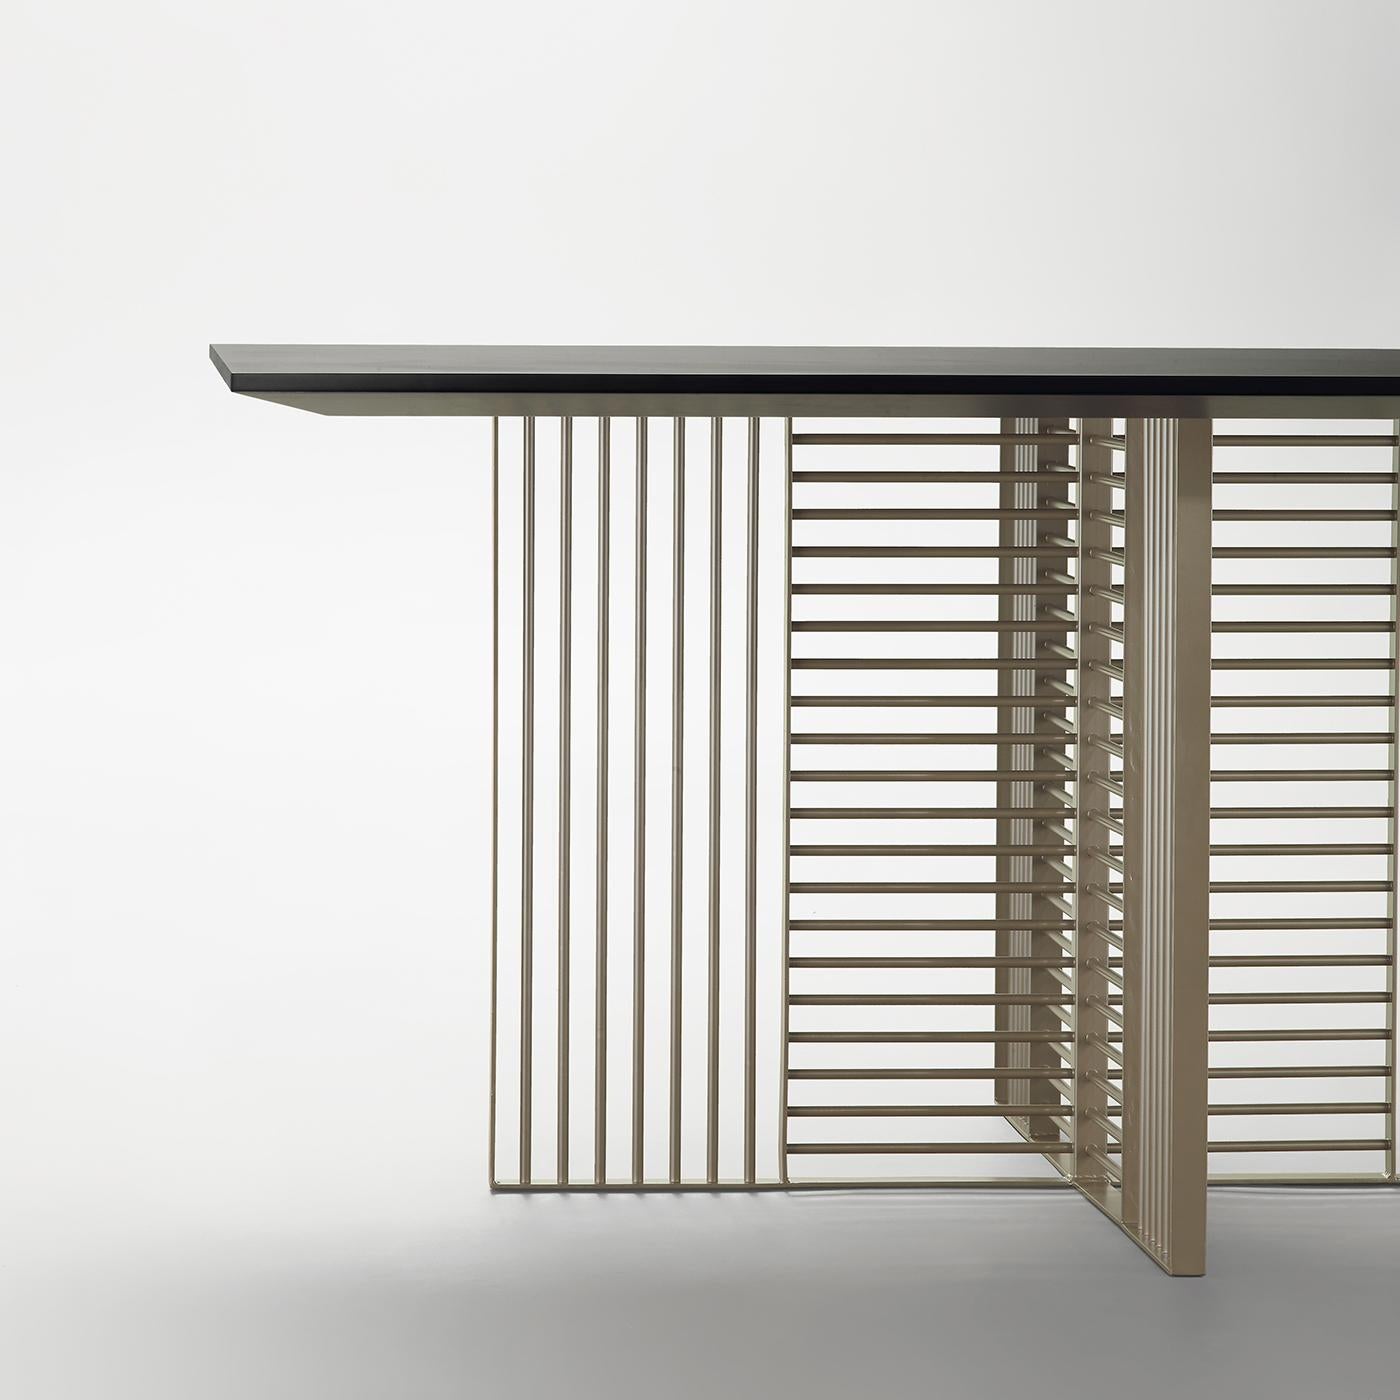 Der lasergeschnittene Stahlrohrsockel dieses Esstisches bildet ein auffälliges geometrisches Muster aus vertikalen und horizontalen Linien, das eine rechteckige MDF-Platte trägt. Dieser Tisch ist für Innenräume konzipiert, kann aber auch individuell